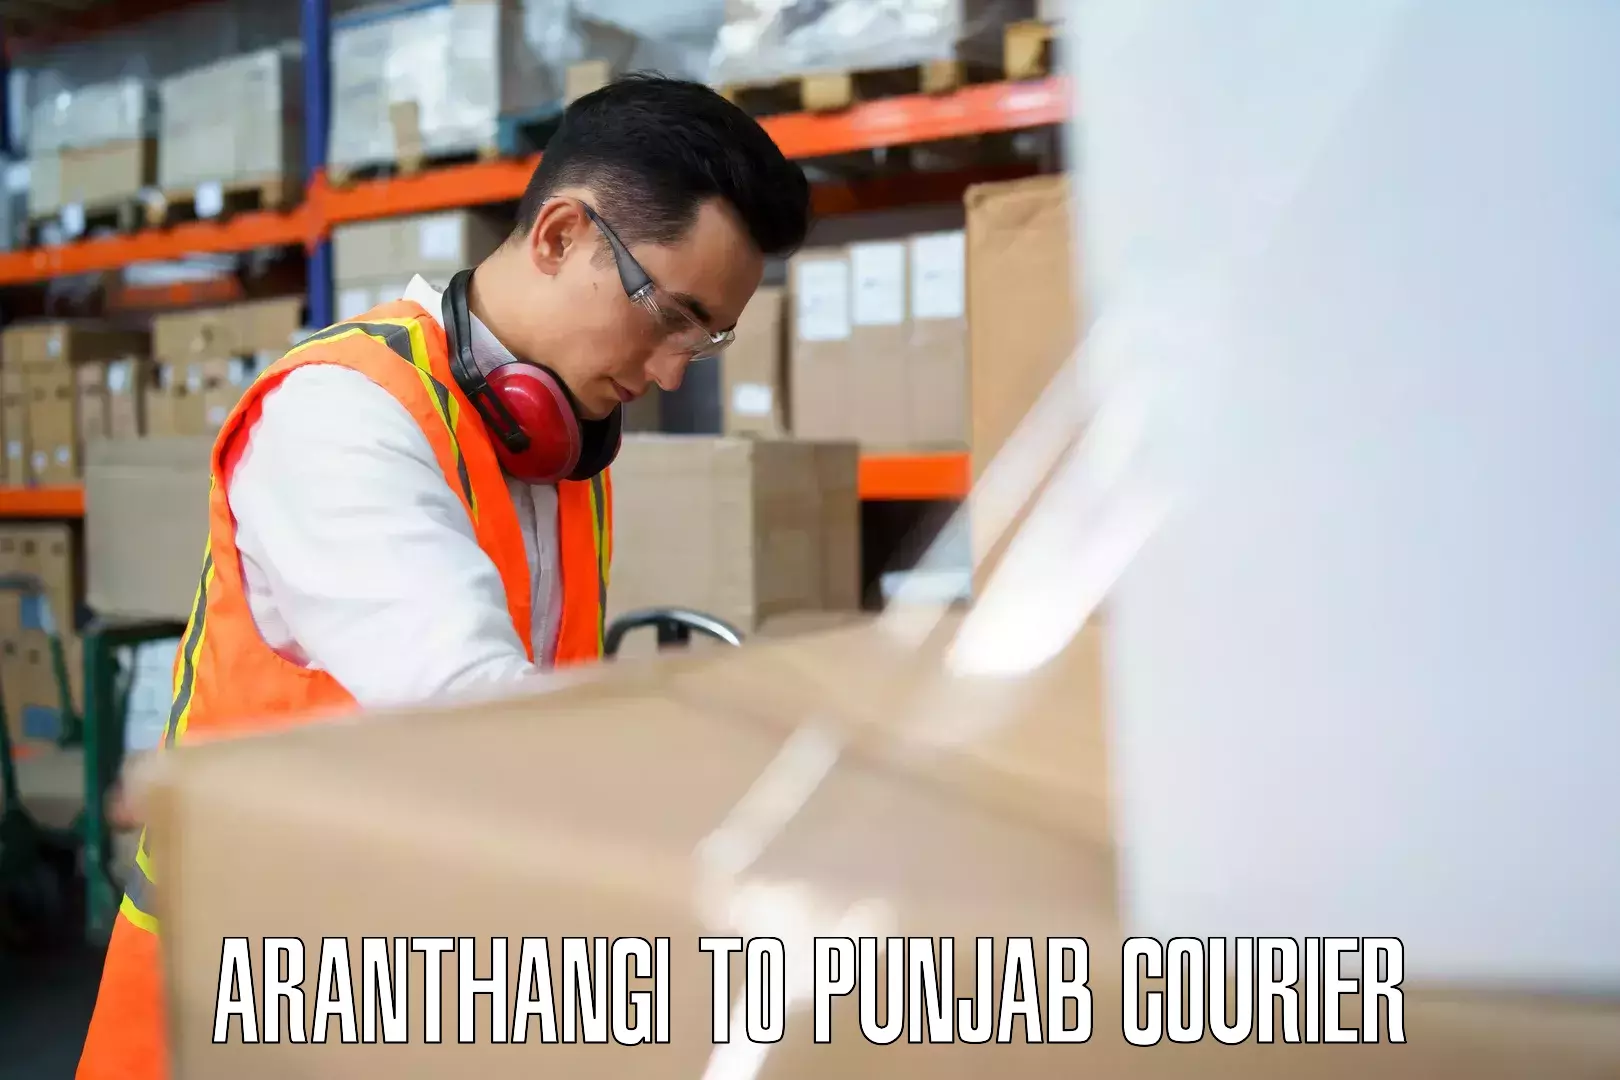 Baggage transport network Aranthangi to Punjab